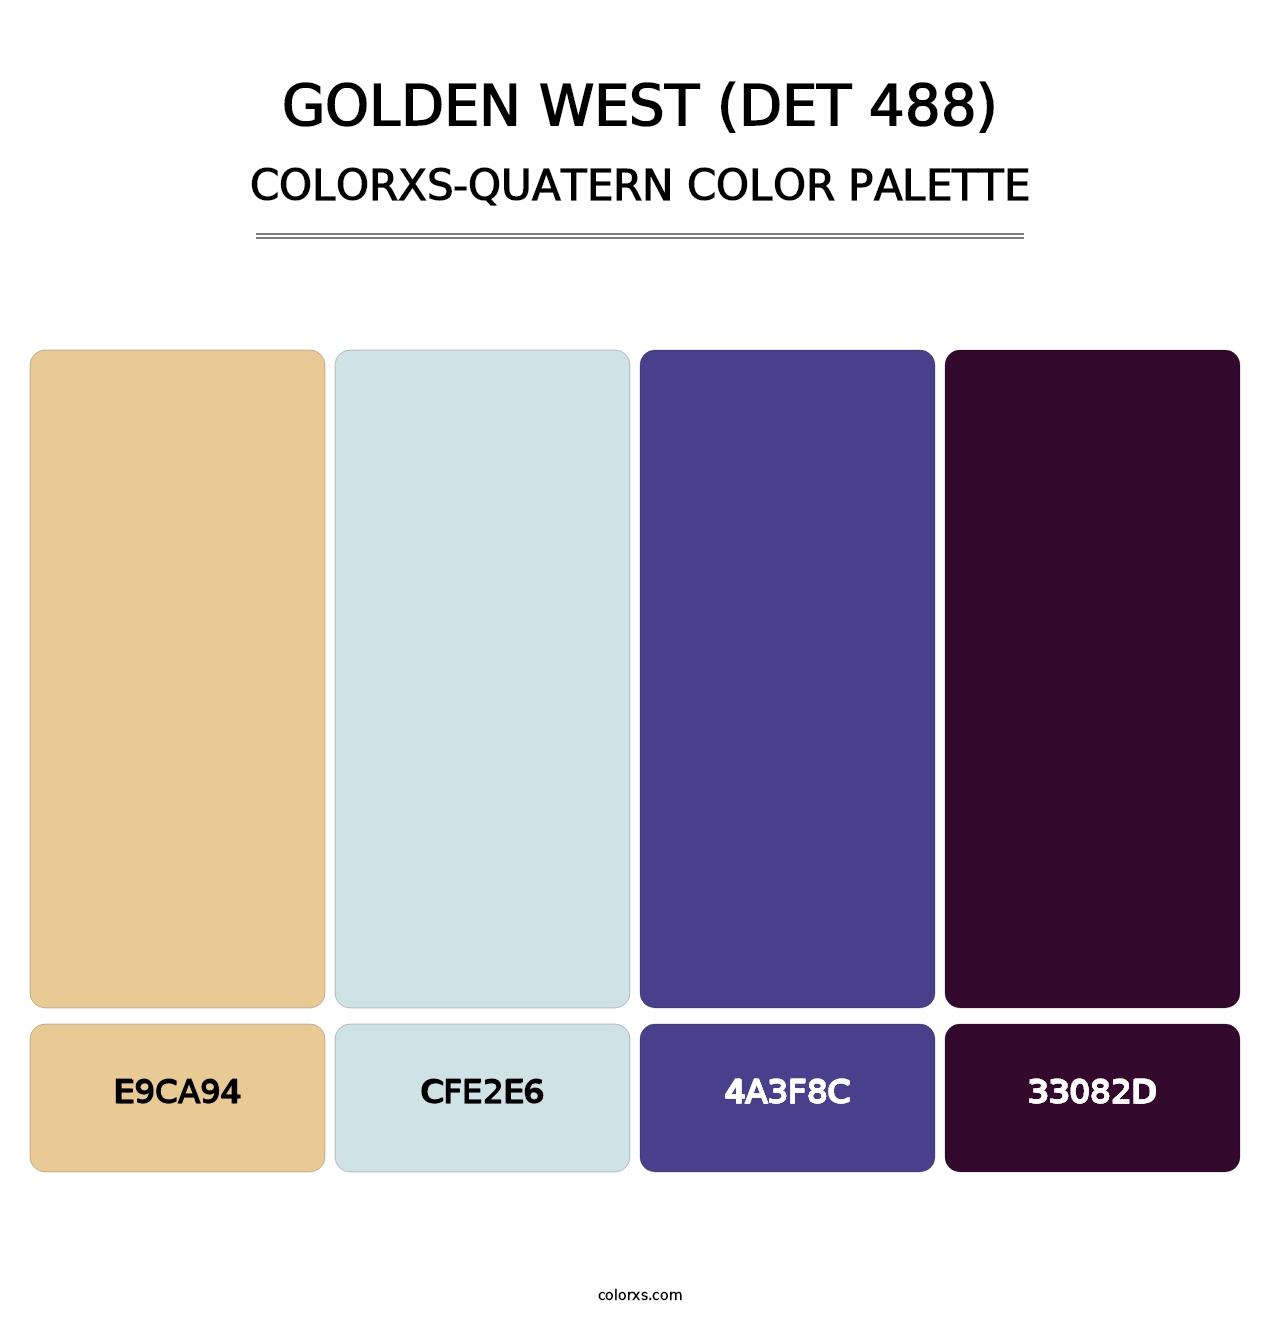 Golden West (DET 488) - Colorxs Quatern Palette